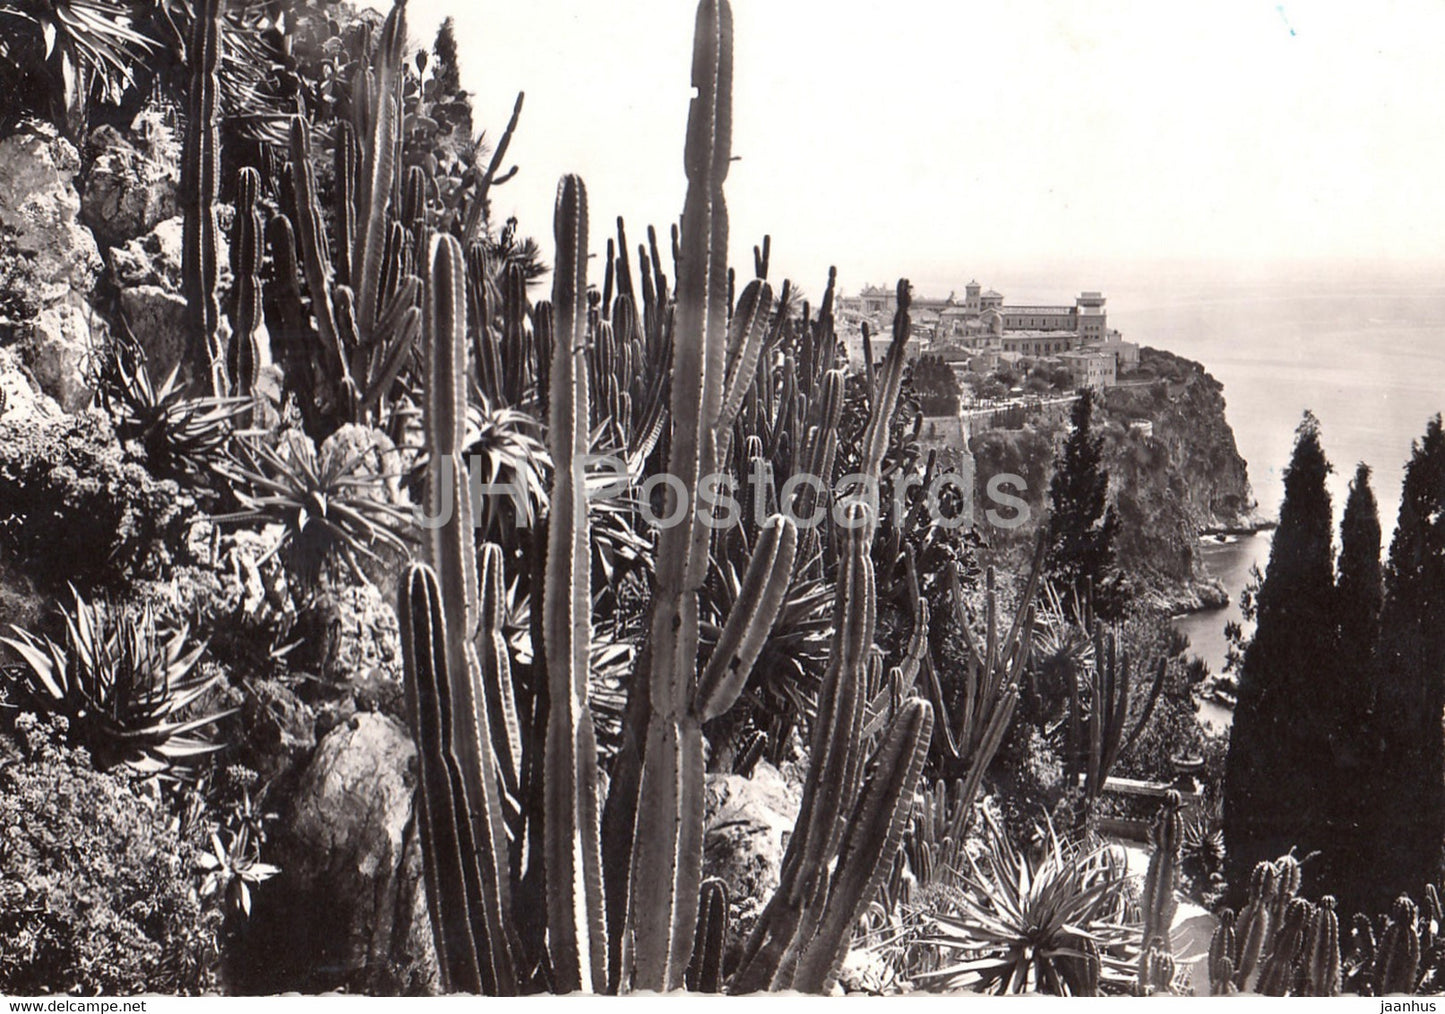 Vue sur le Rocher de Monaco - Les Jardins exotiques - cactus - 1949 - Monaco - used - JH Postcards